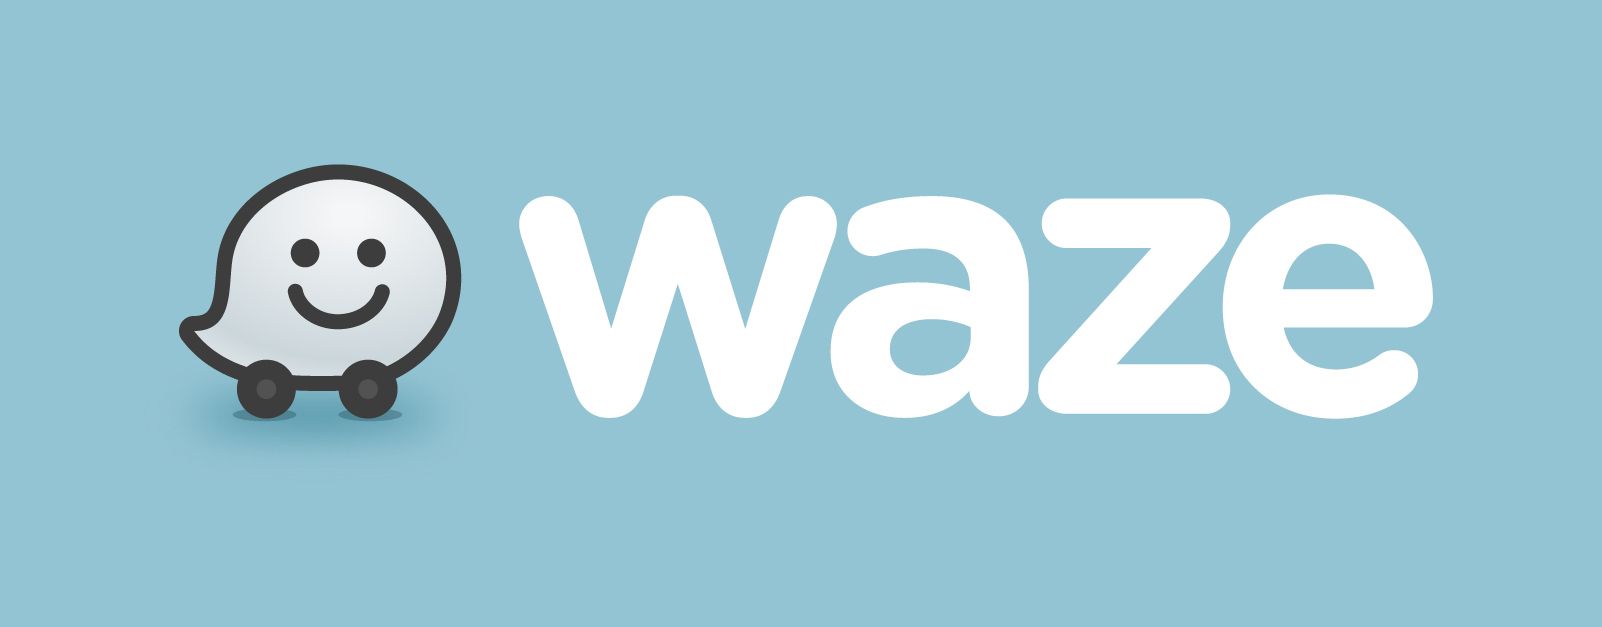 aplicativosmaisbaixados-waze